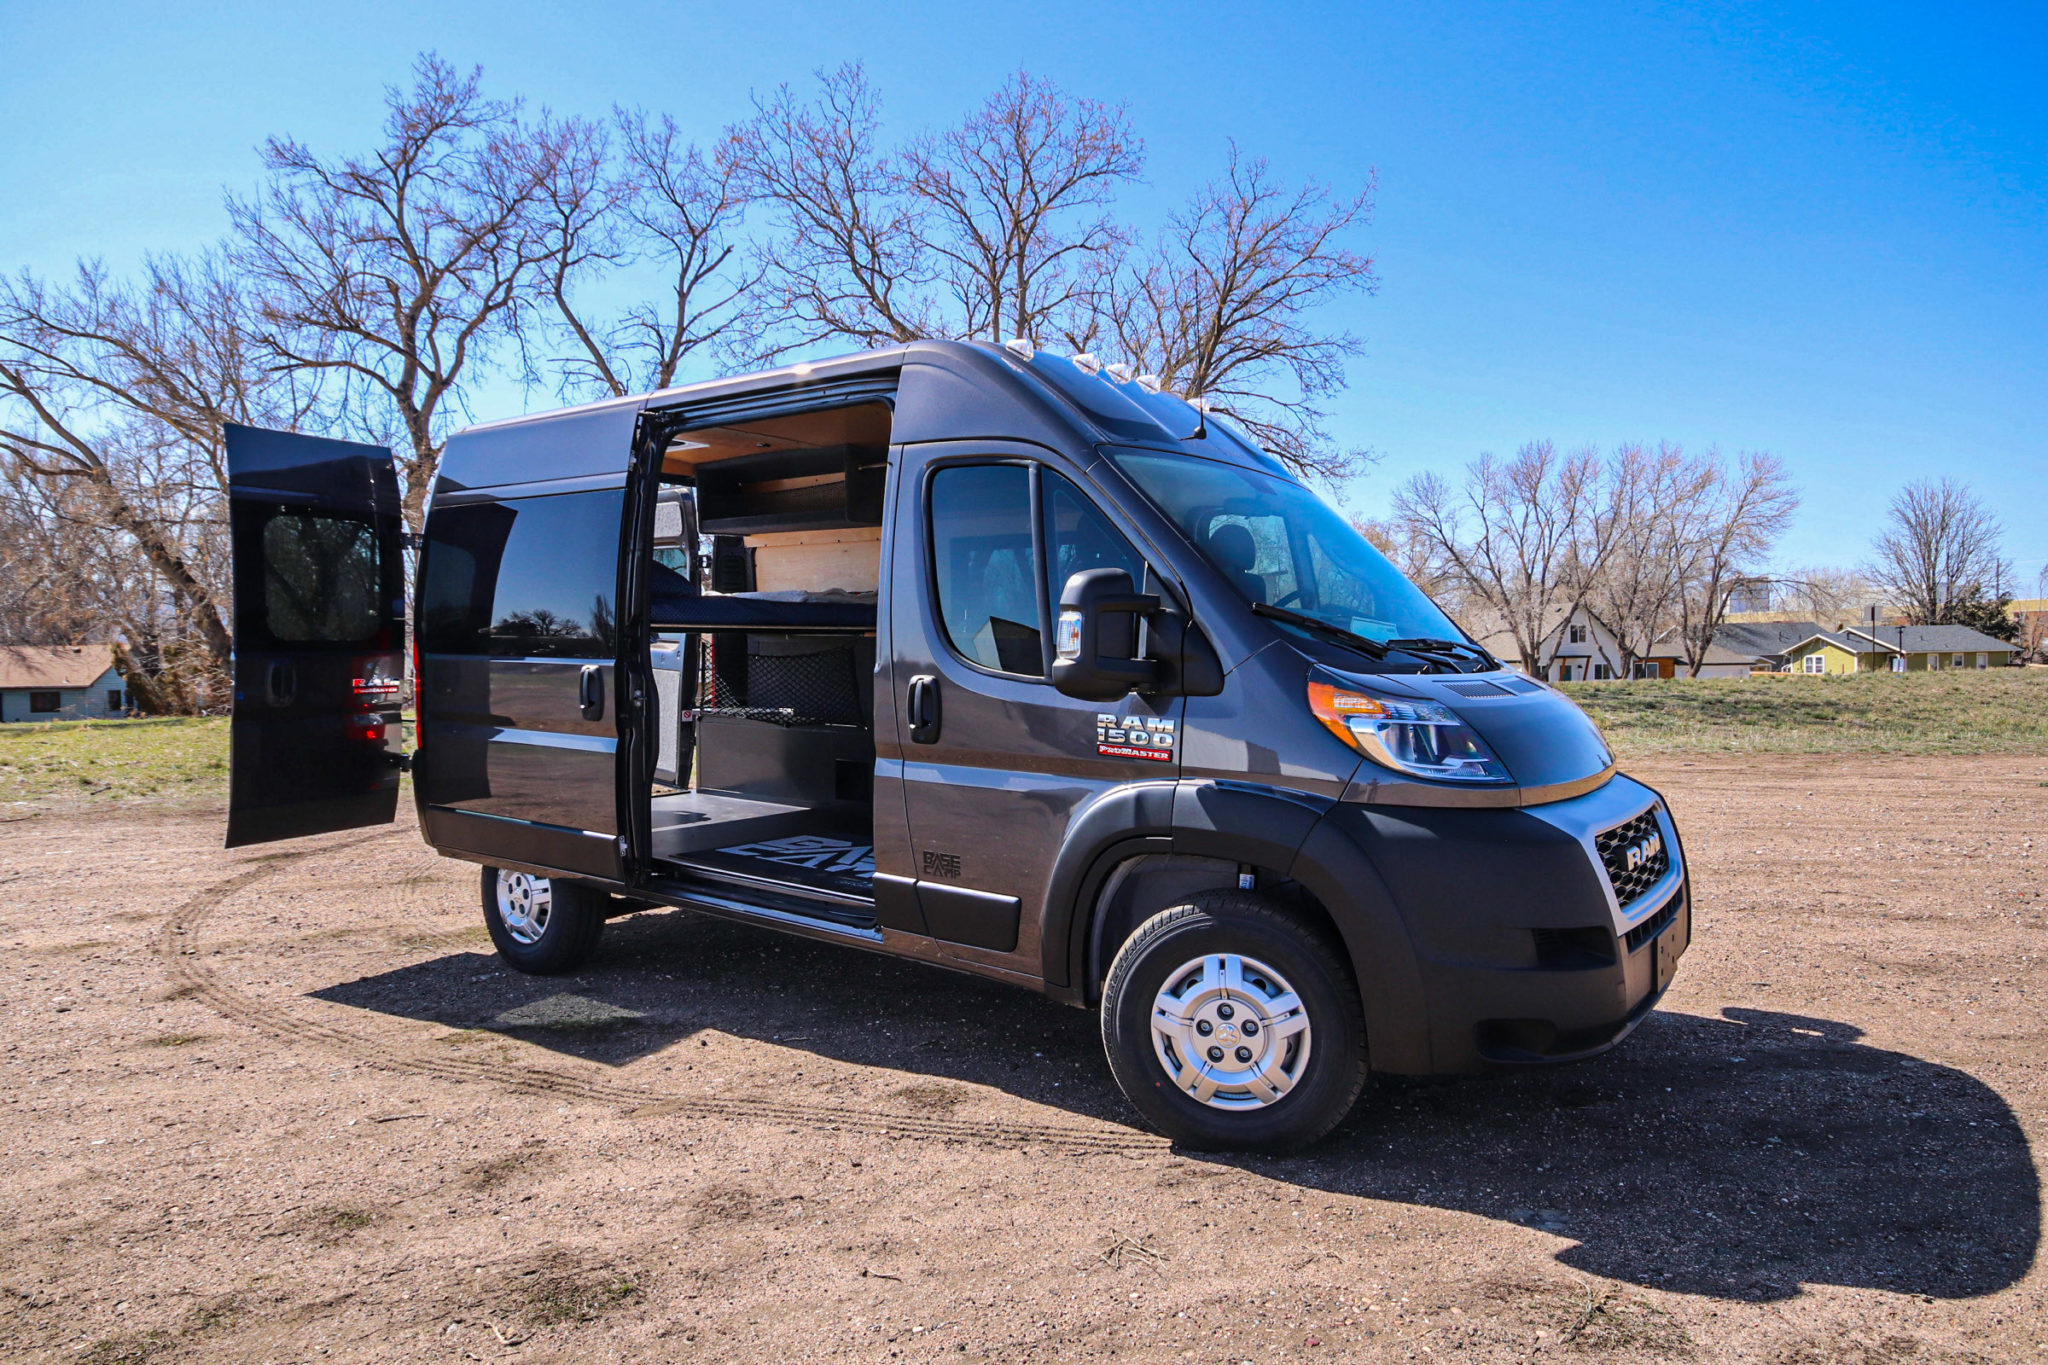 2021 Ram ProMaster Camper Van For Sale in Fort Collins, Colorado Van